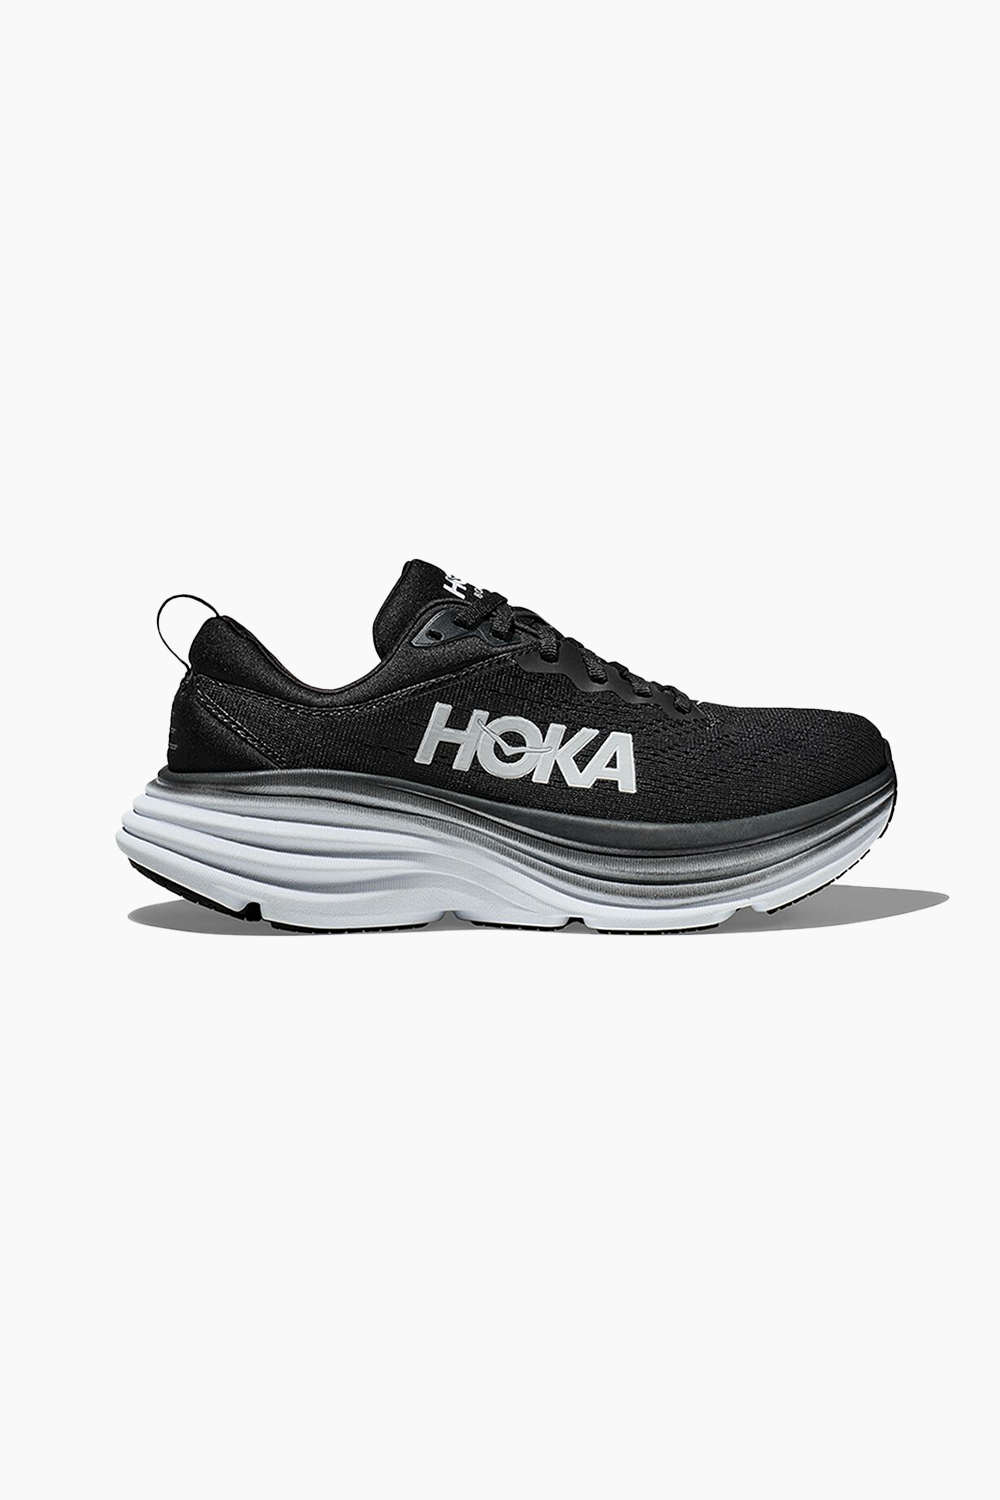 Hoka Men's Bondi 8 Sneaker in Black/White